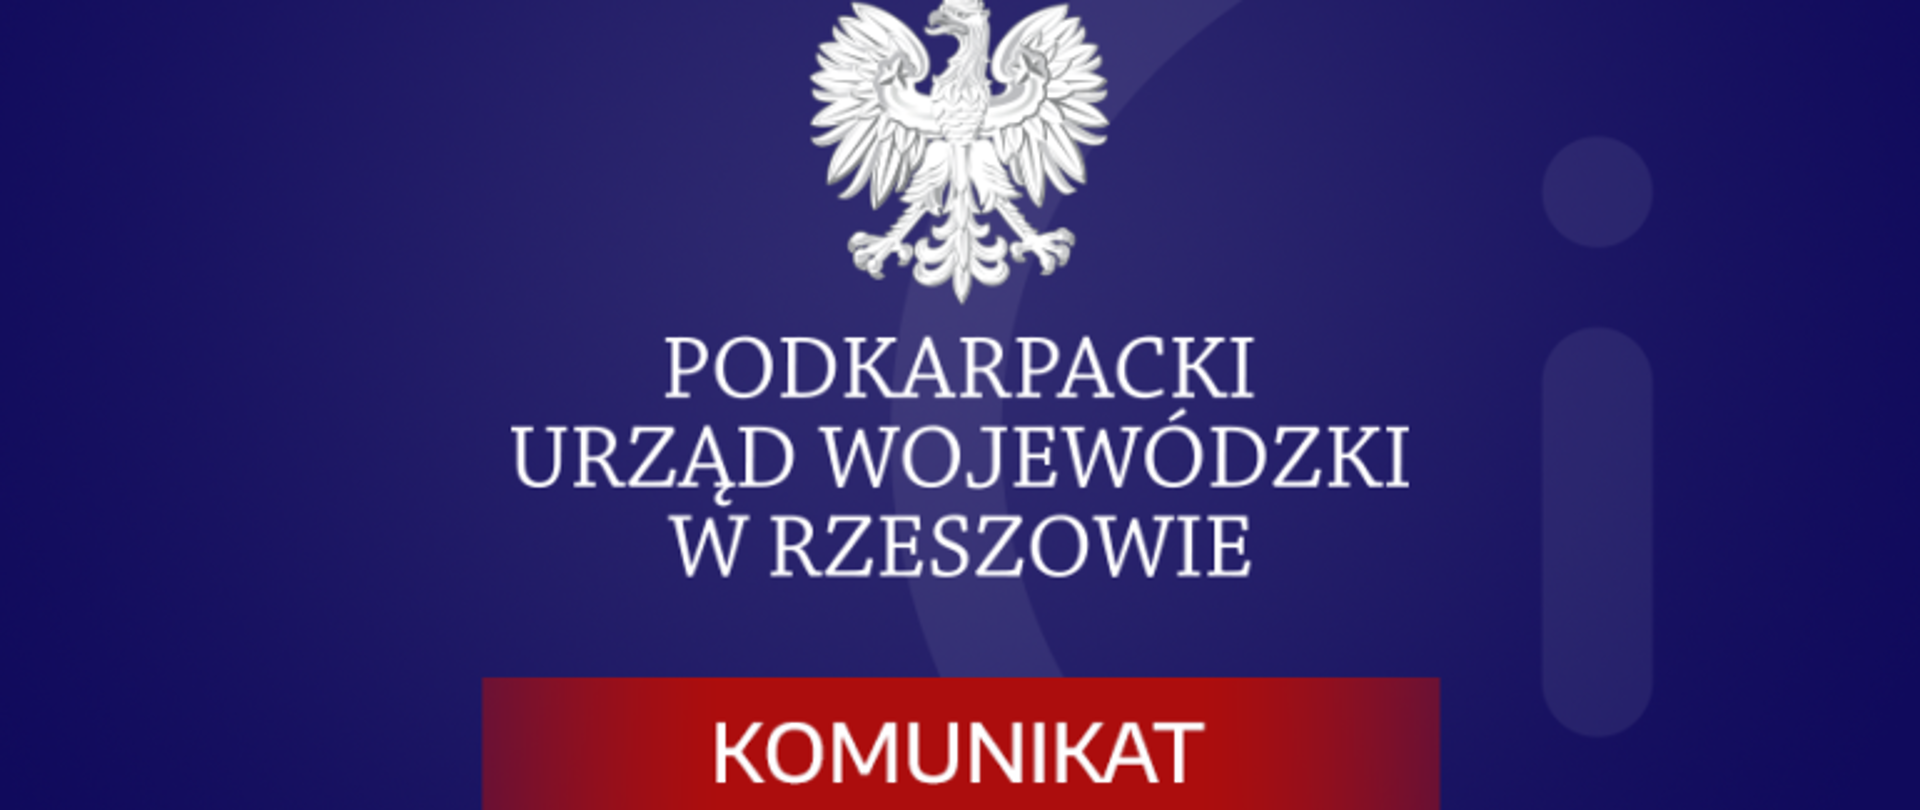 Grafika z napisem Podkarpacki Urząd Wojewódzki w Rzeszowie - komunikat.